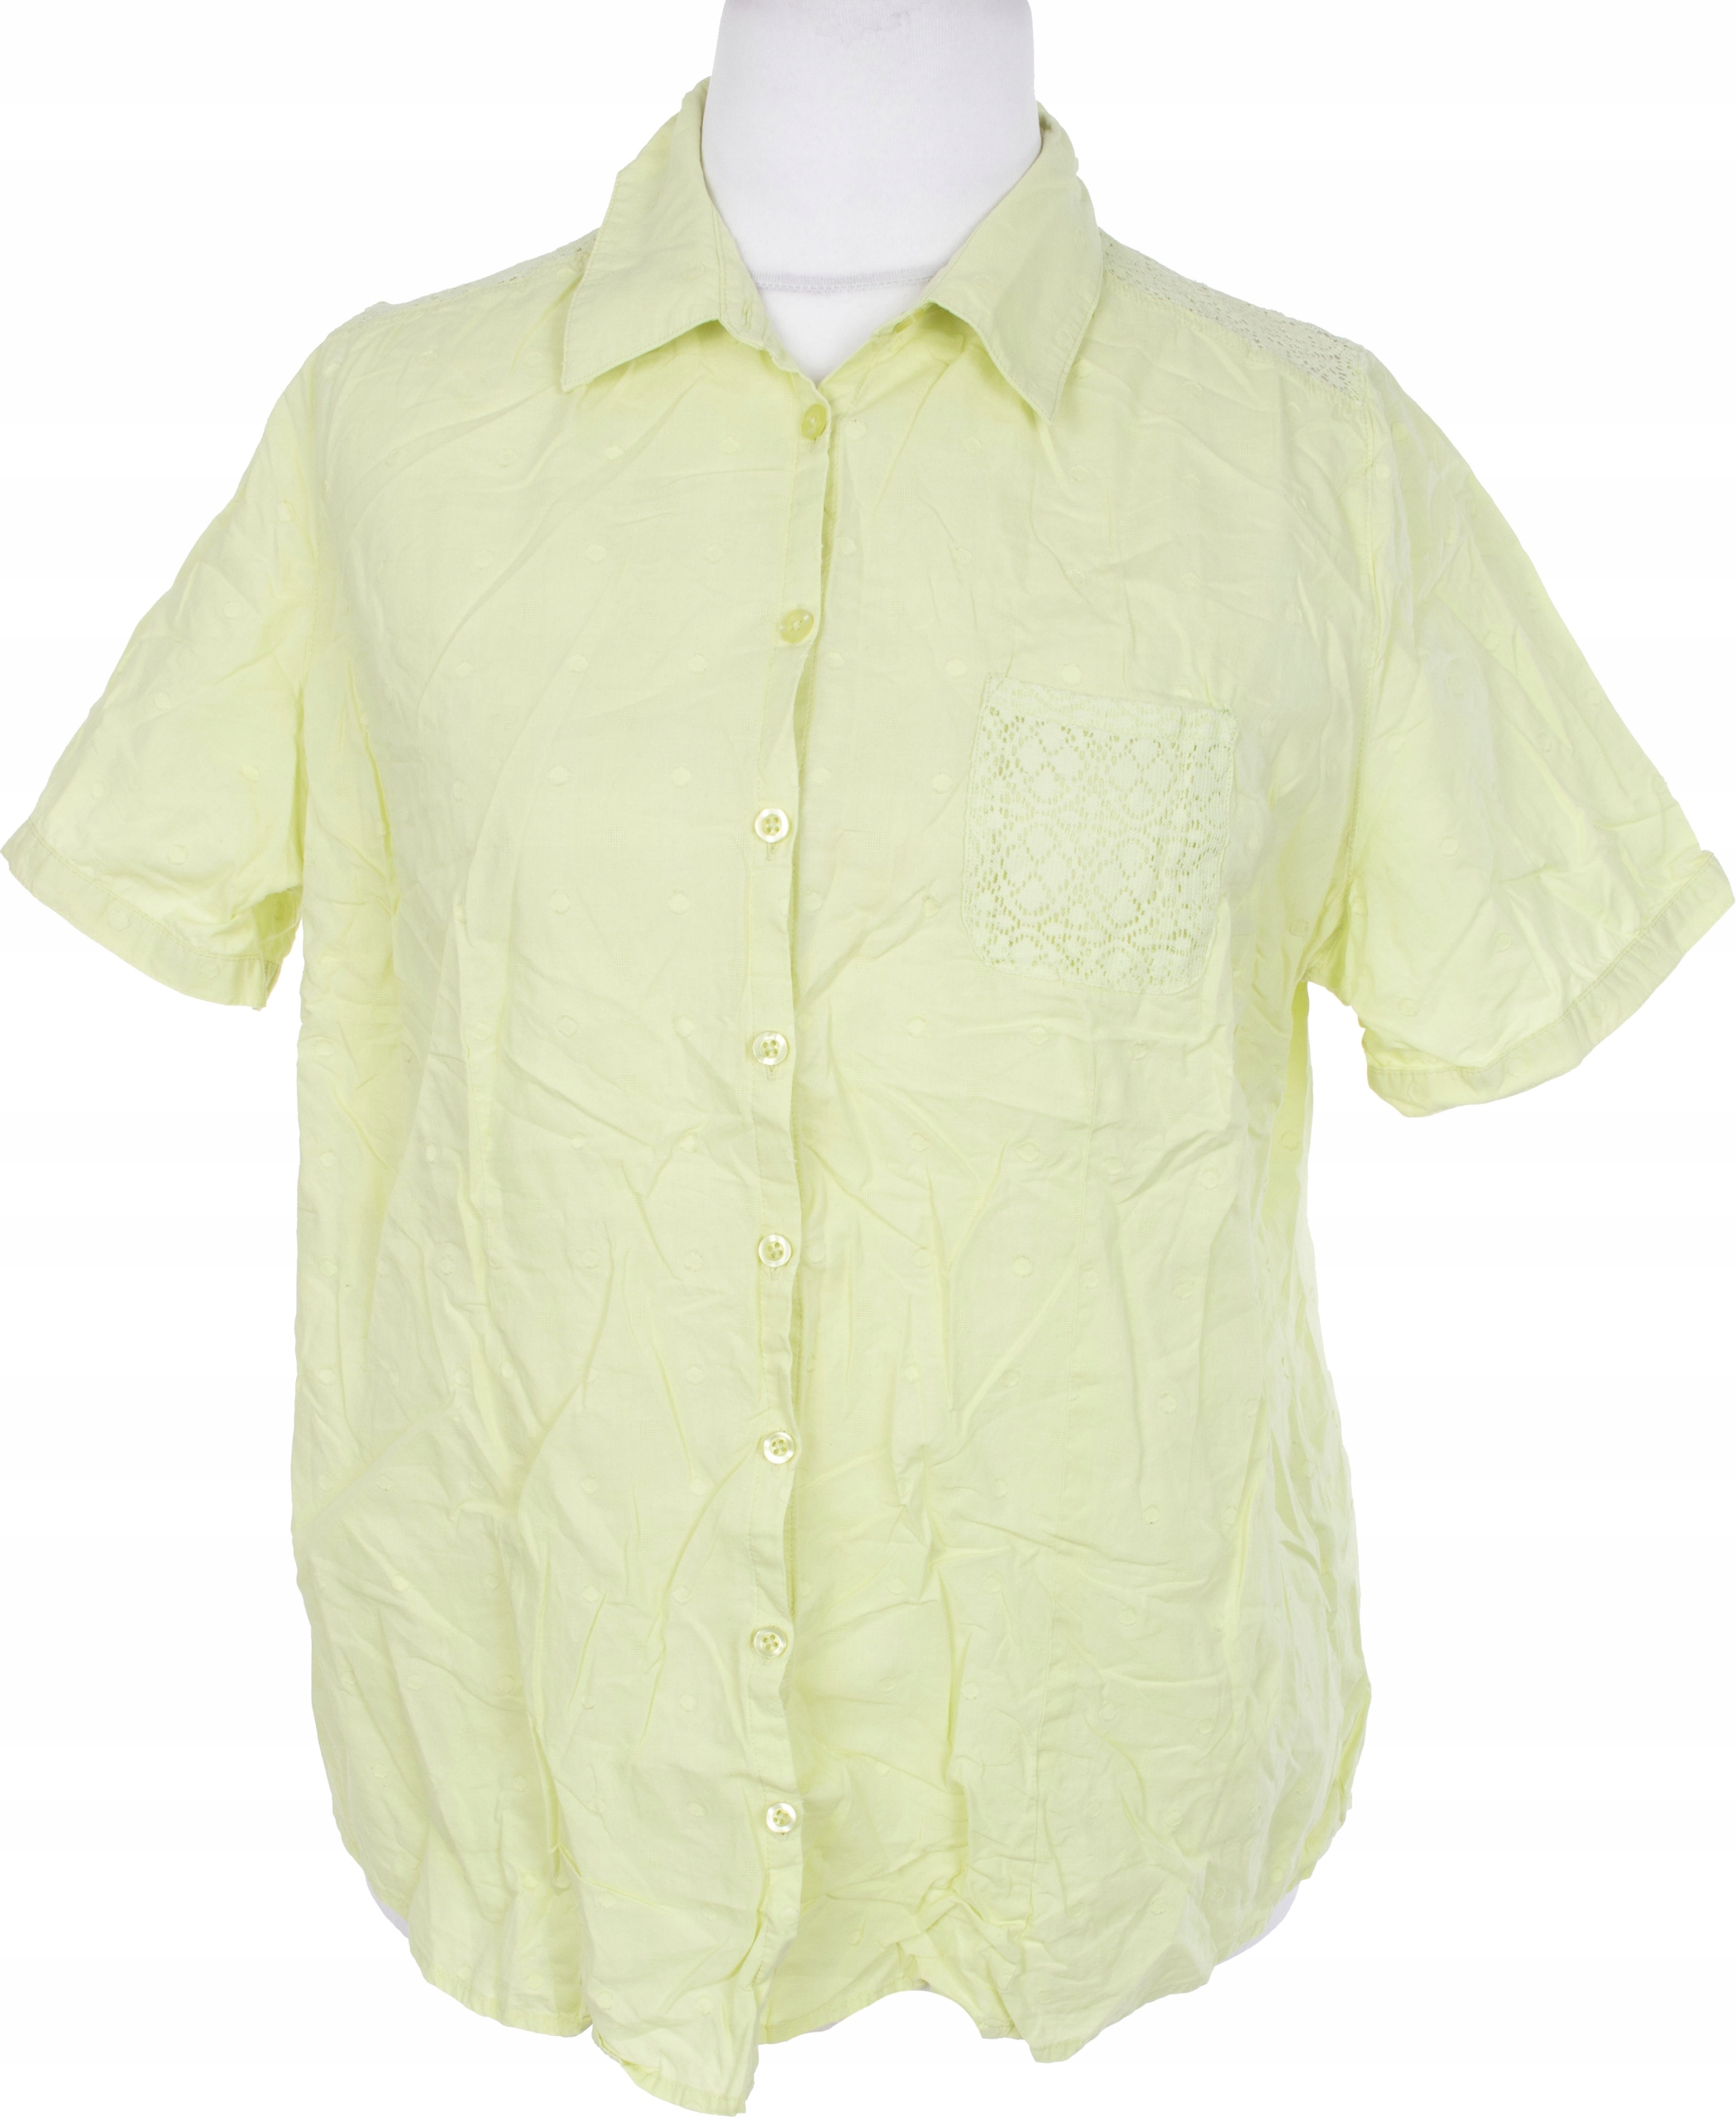 Charles V\u00f6gele Koszulowa bluzka Abstrakcyjny wz\u00f3r W stylu biznesowym Moda Bluzki Koszulowe bluzki Charles Vögele 